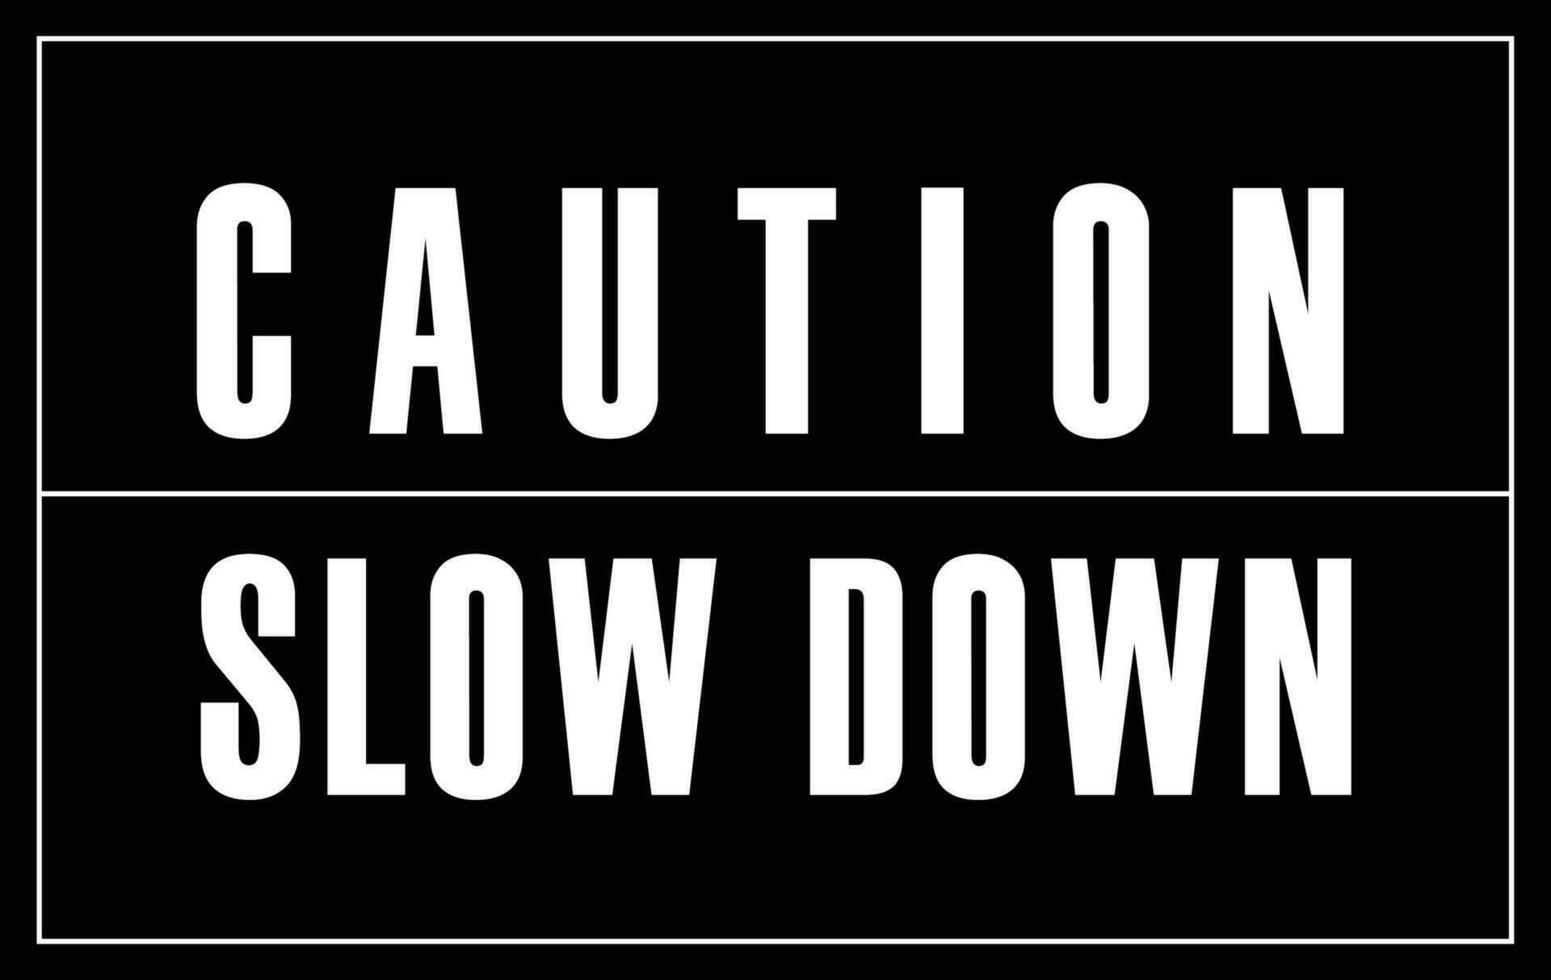 Cuidado lento baixa placa para pedestres e tráfego segurança vetor